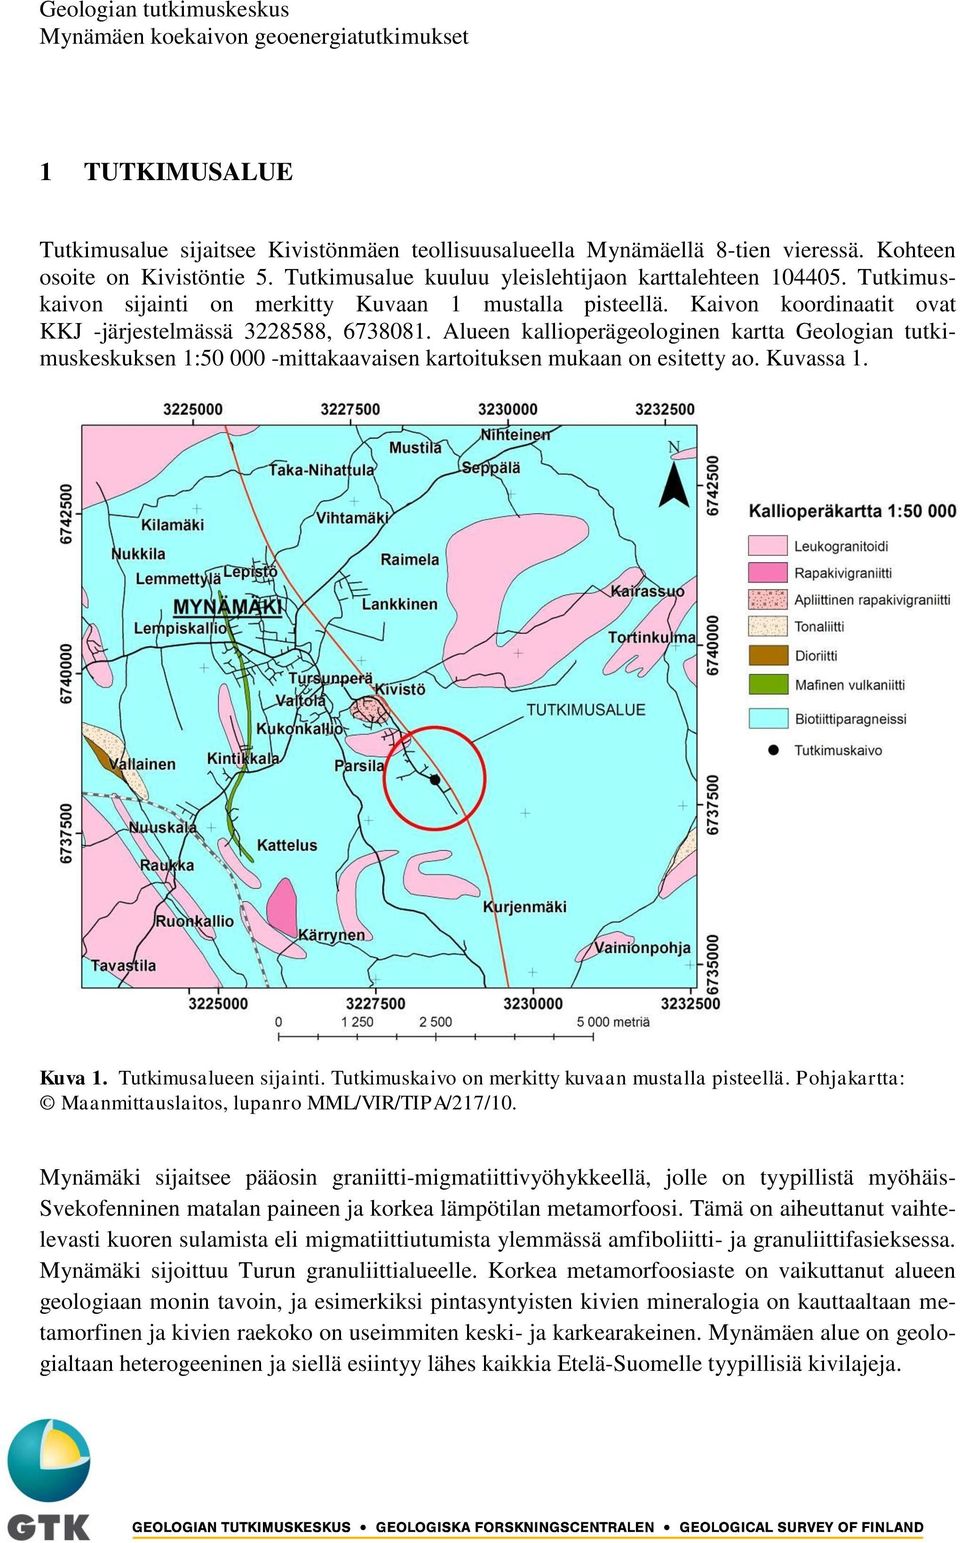 Alueen kallioperägeologinen kartta Geologian tutkimuskeskuksen 1:50 000 mittakaavaisen kartoituksen mukaan on esitetty ao. Kuvassa 1. Kuva 1. Tutkimusalueen sijainti.